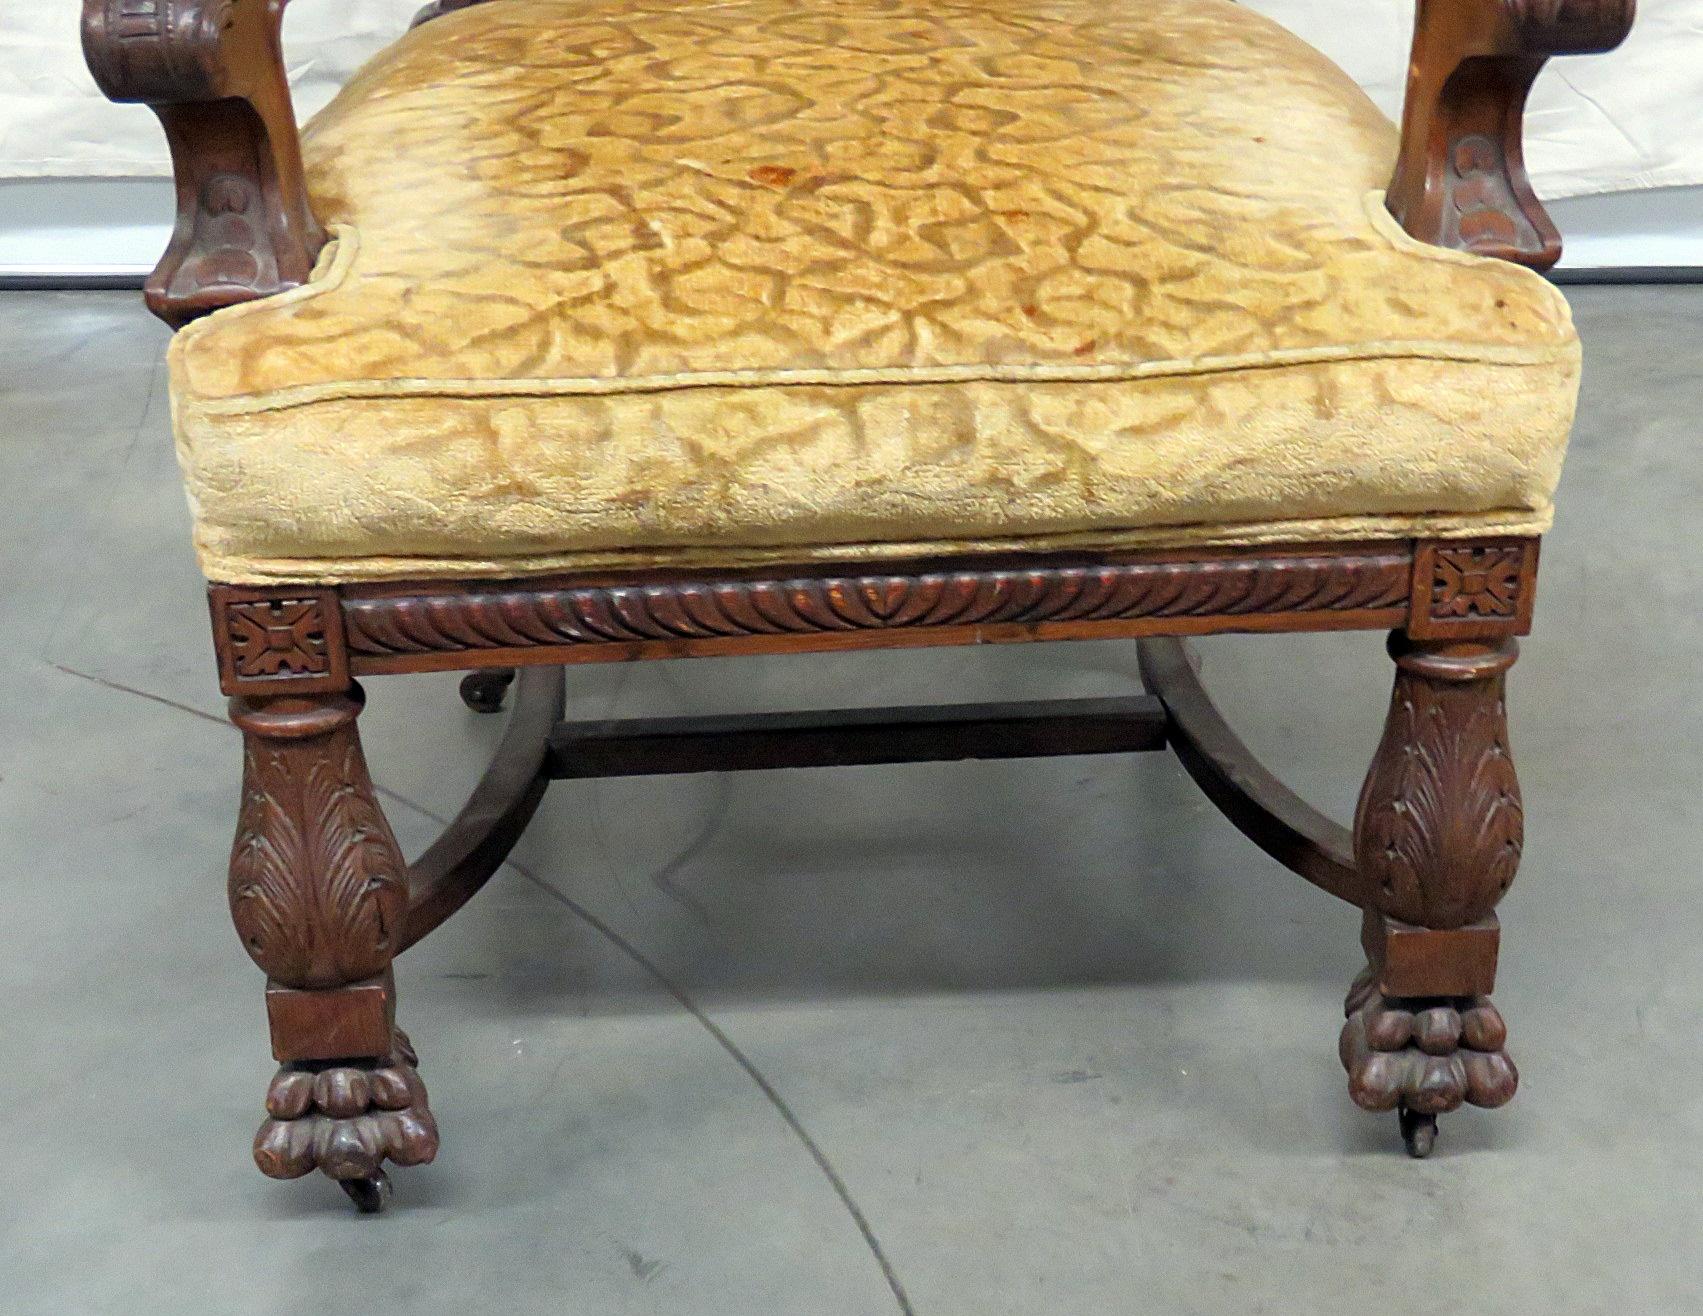 Chaise trône en chêne de style Renaissance, attribuée à Horner, avec pieds avant à pattes et tapisserie texturée sur roulettes.